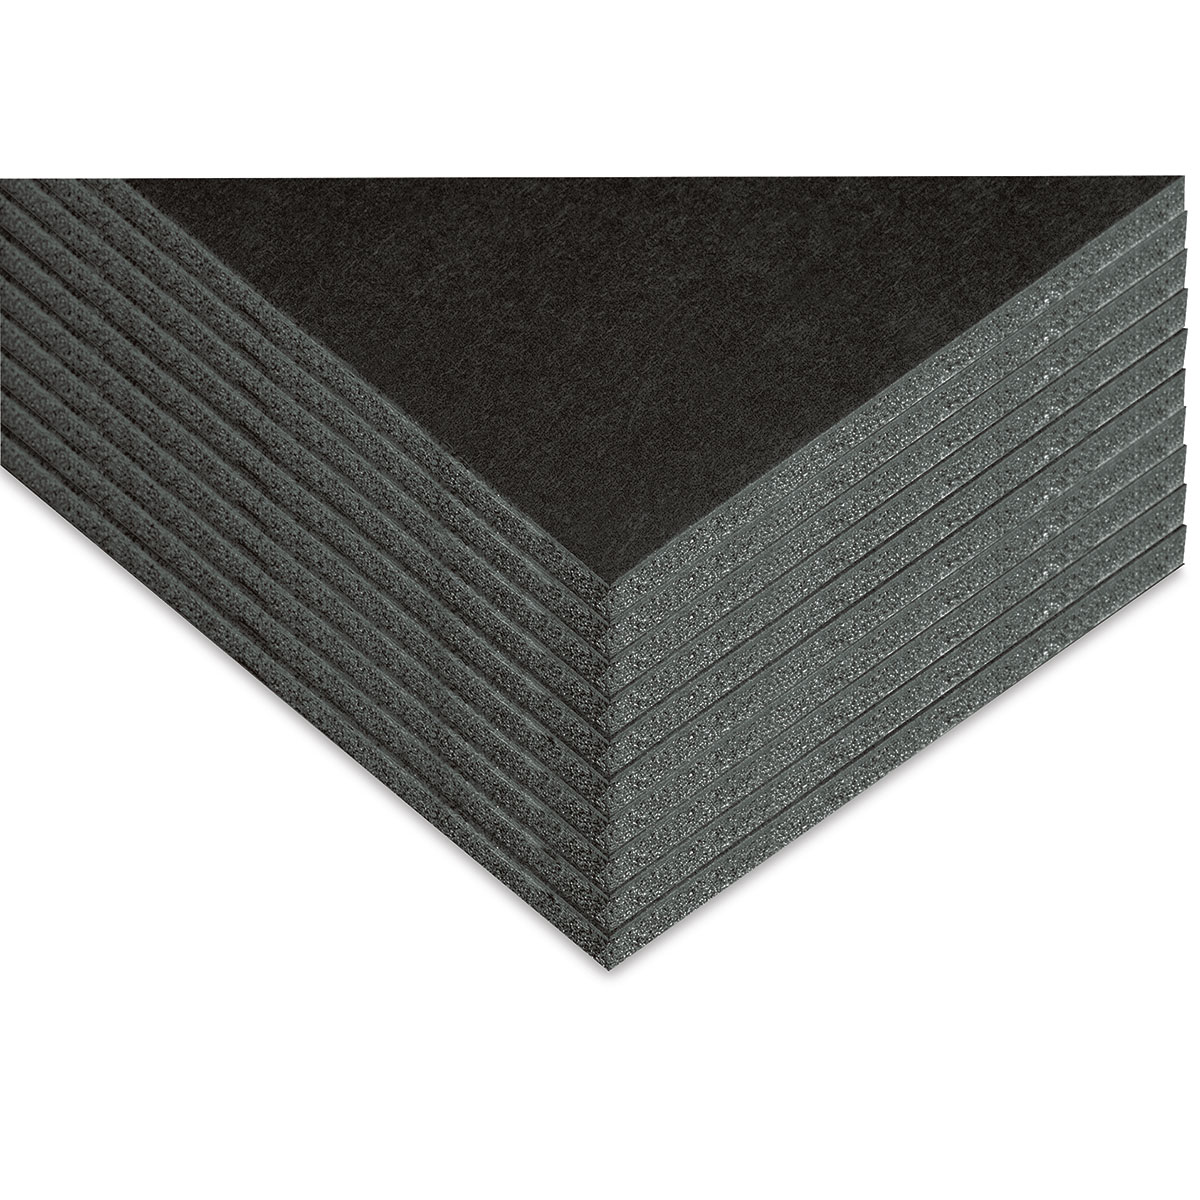 Blackcore Foam Board Pack - 16 x 20 x 3/16, Black, Pkg of 3 